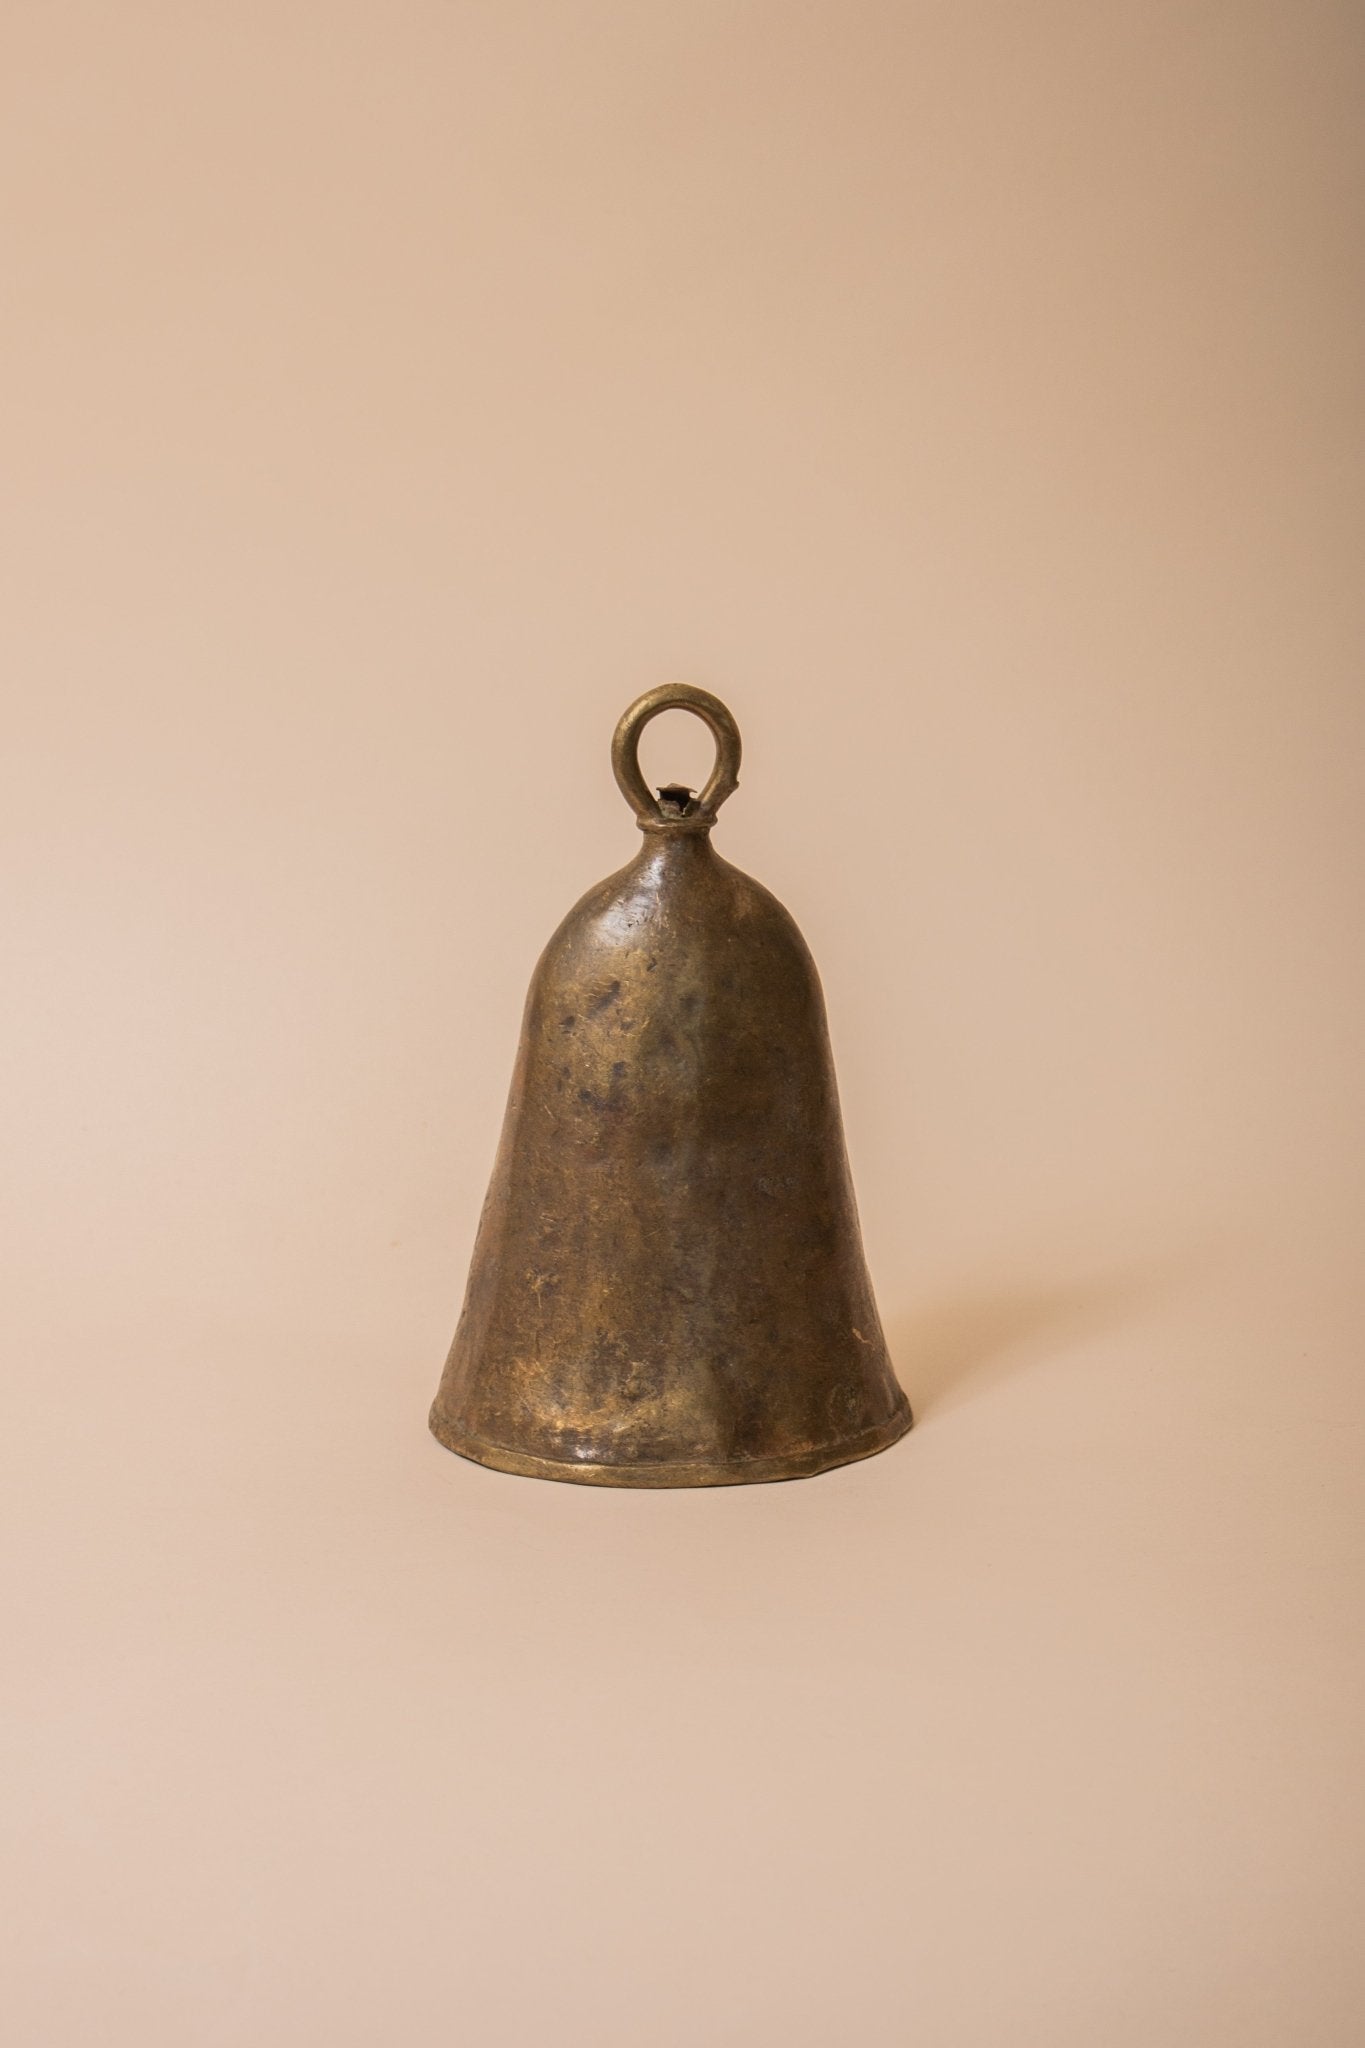 Merritt Bell - Sweet Water Decor - bell